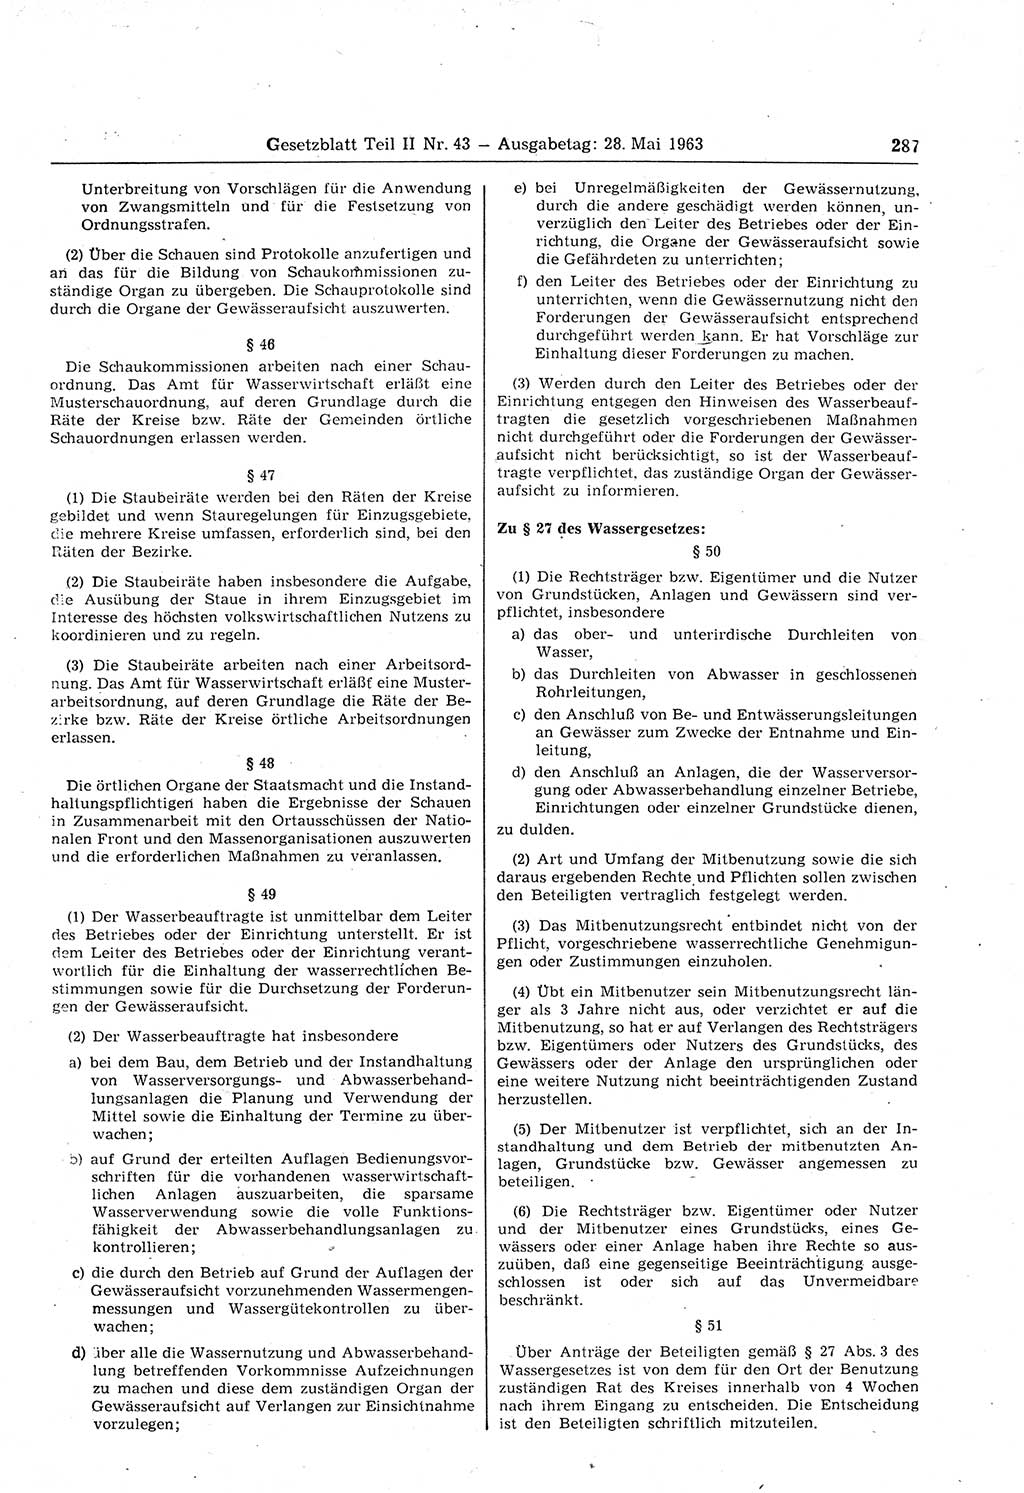 Gesetzblatt (GBl.) der Deutschen Demokratischen Republik (DDR) Teil ⅠⅠ 1963, Seite 287 (GBl. DDR ⅠⅠ 1963, S. 287)